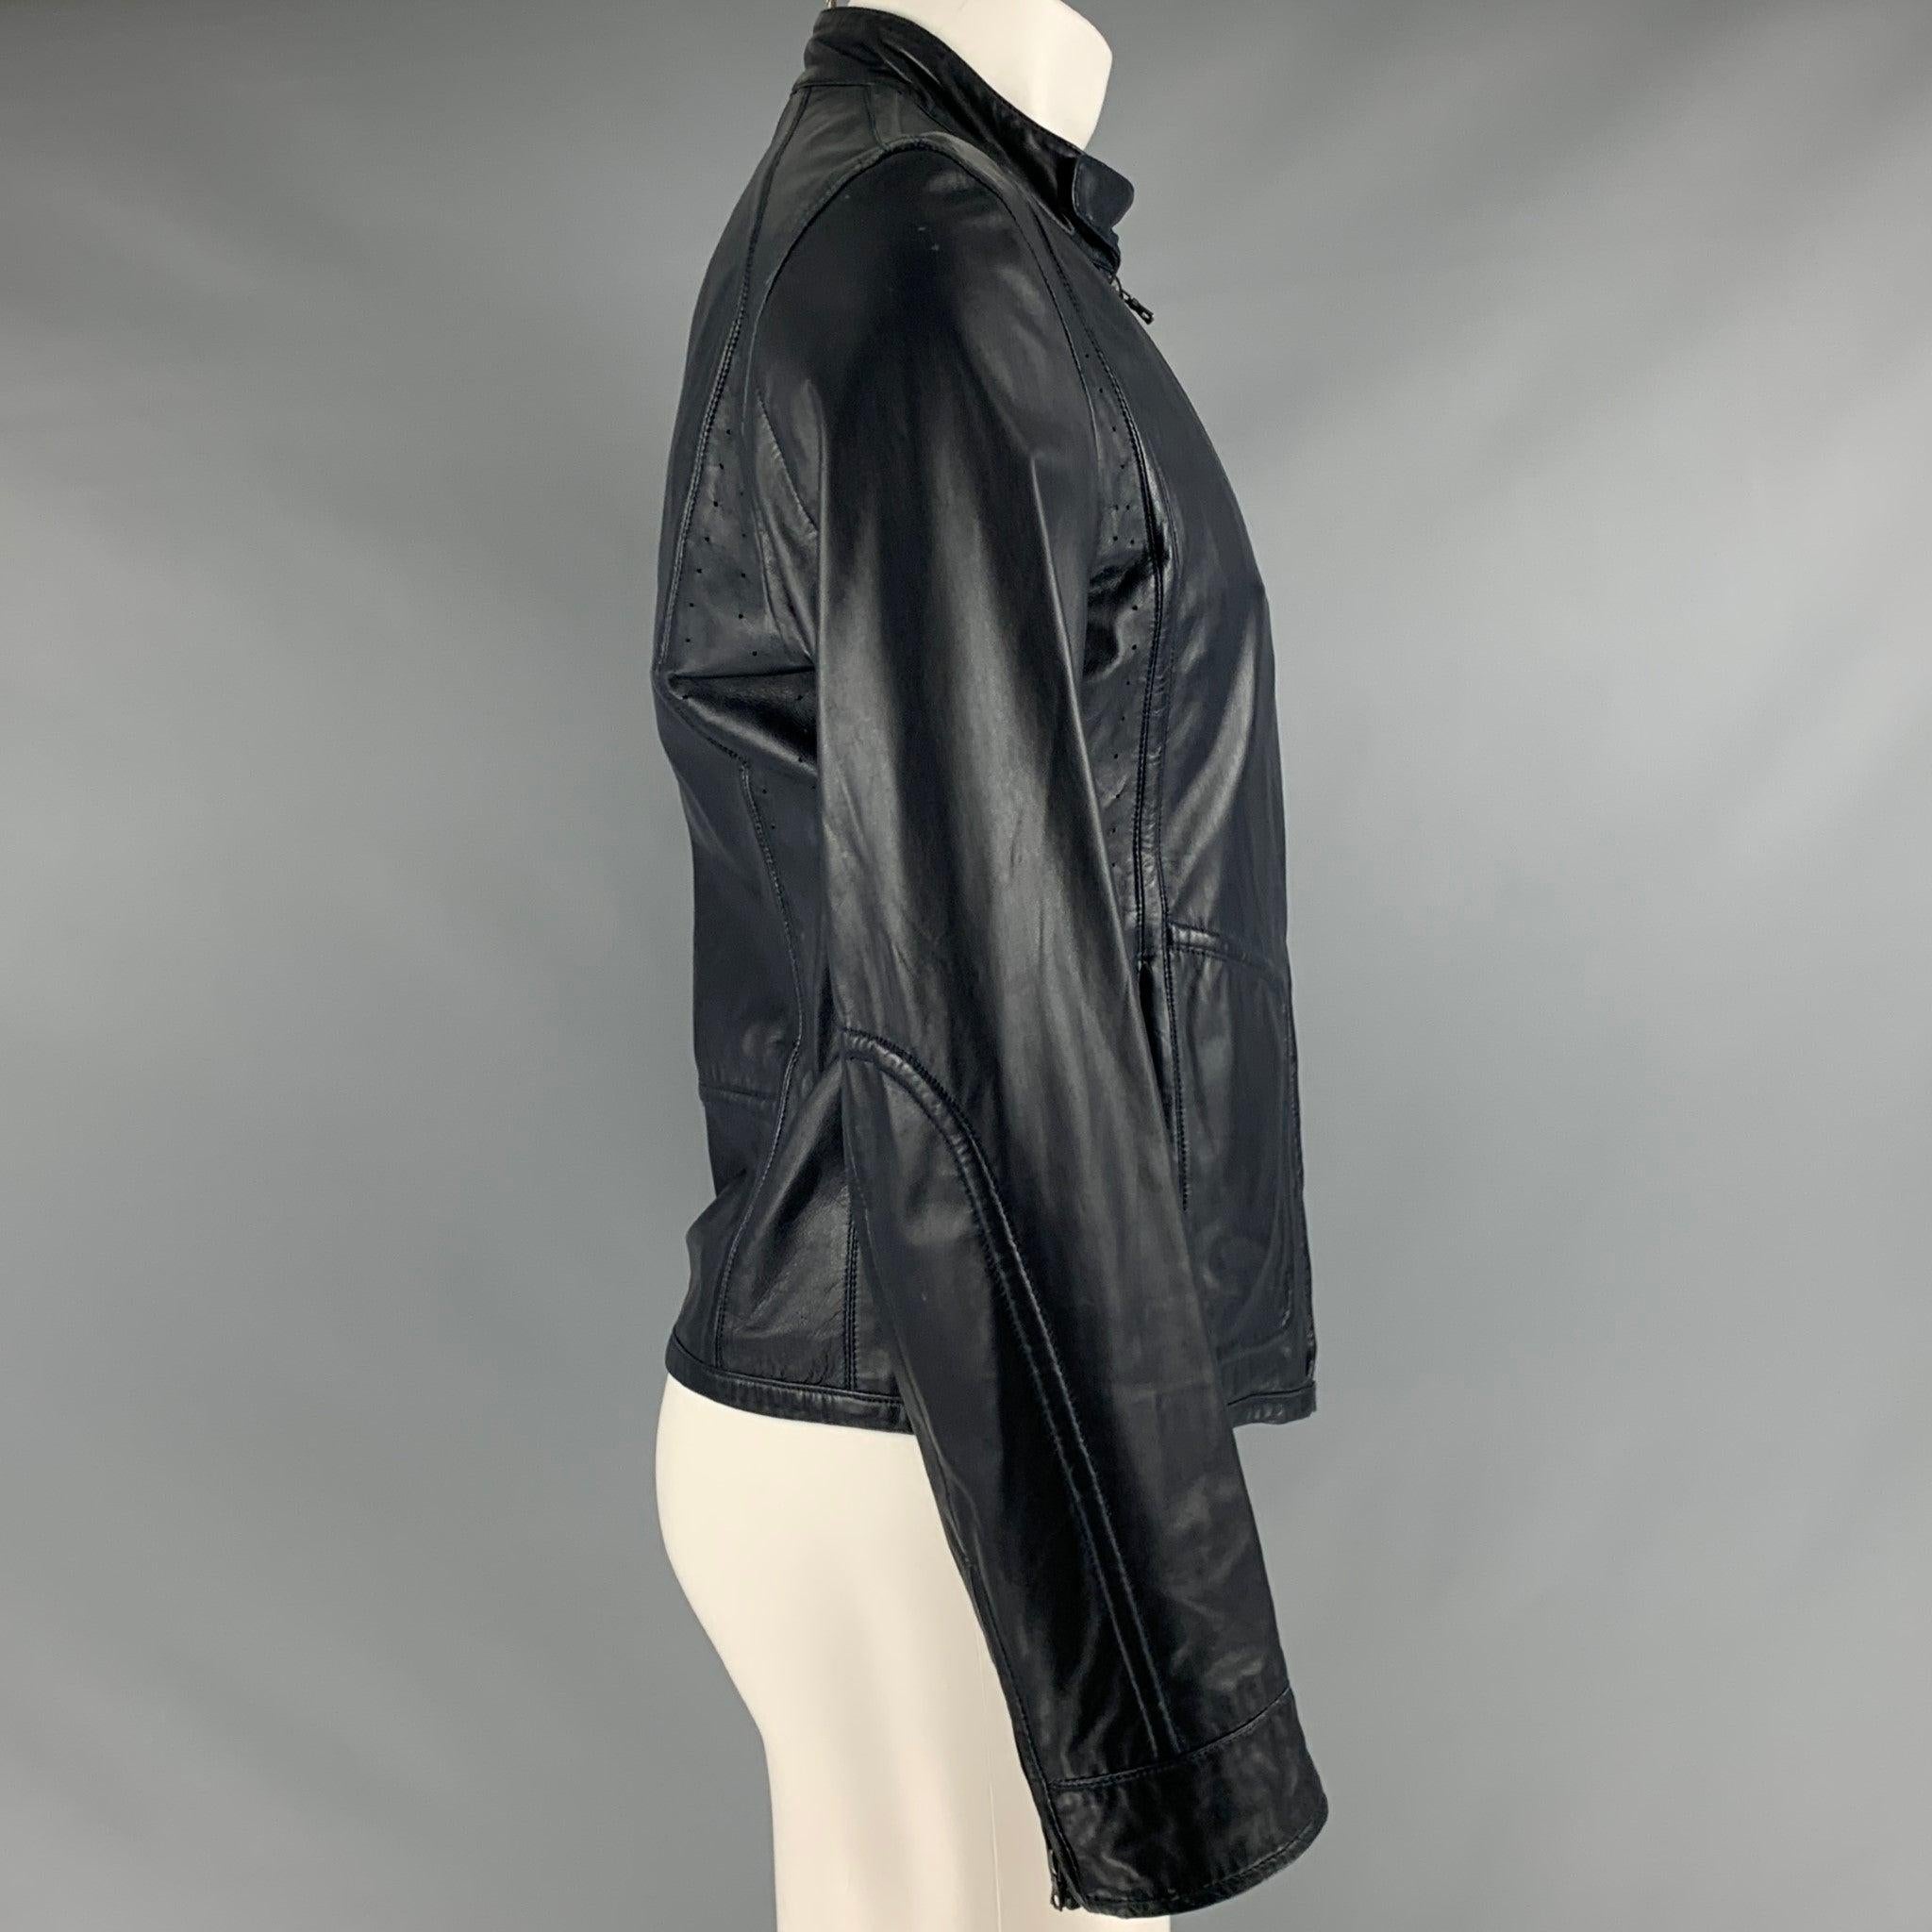 ELIE TAHARI Jacke
aus marineblauem Leder, mit vier Taschen und Reißverschluss. Sehr guter, gebrauchter Zustand. Leichte Gebrauchsspuren. 

Markiert:   Größe nicht gekennzeichnet. 

Abmessungen: 
 
Schultern: 17,5 Zoll Brustumfang: 37 Zoll